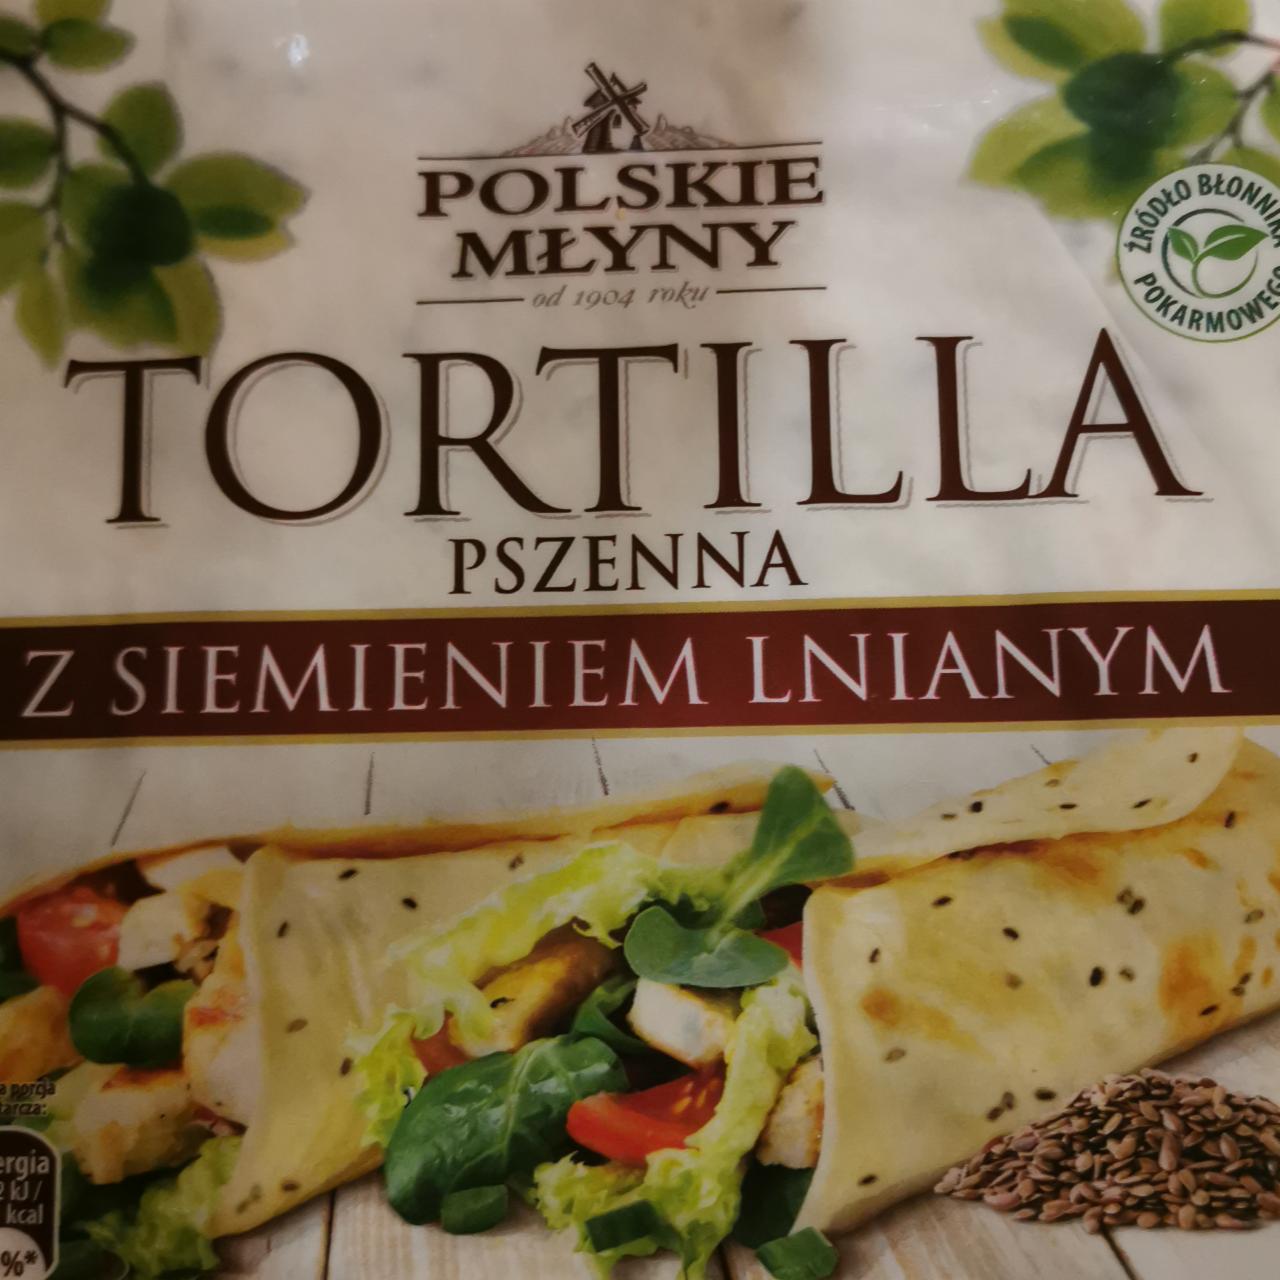 Zdjęcia - Tortilla pszenna z siemieniem lnianym Polskie młyny